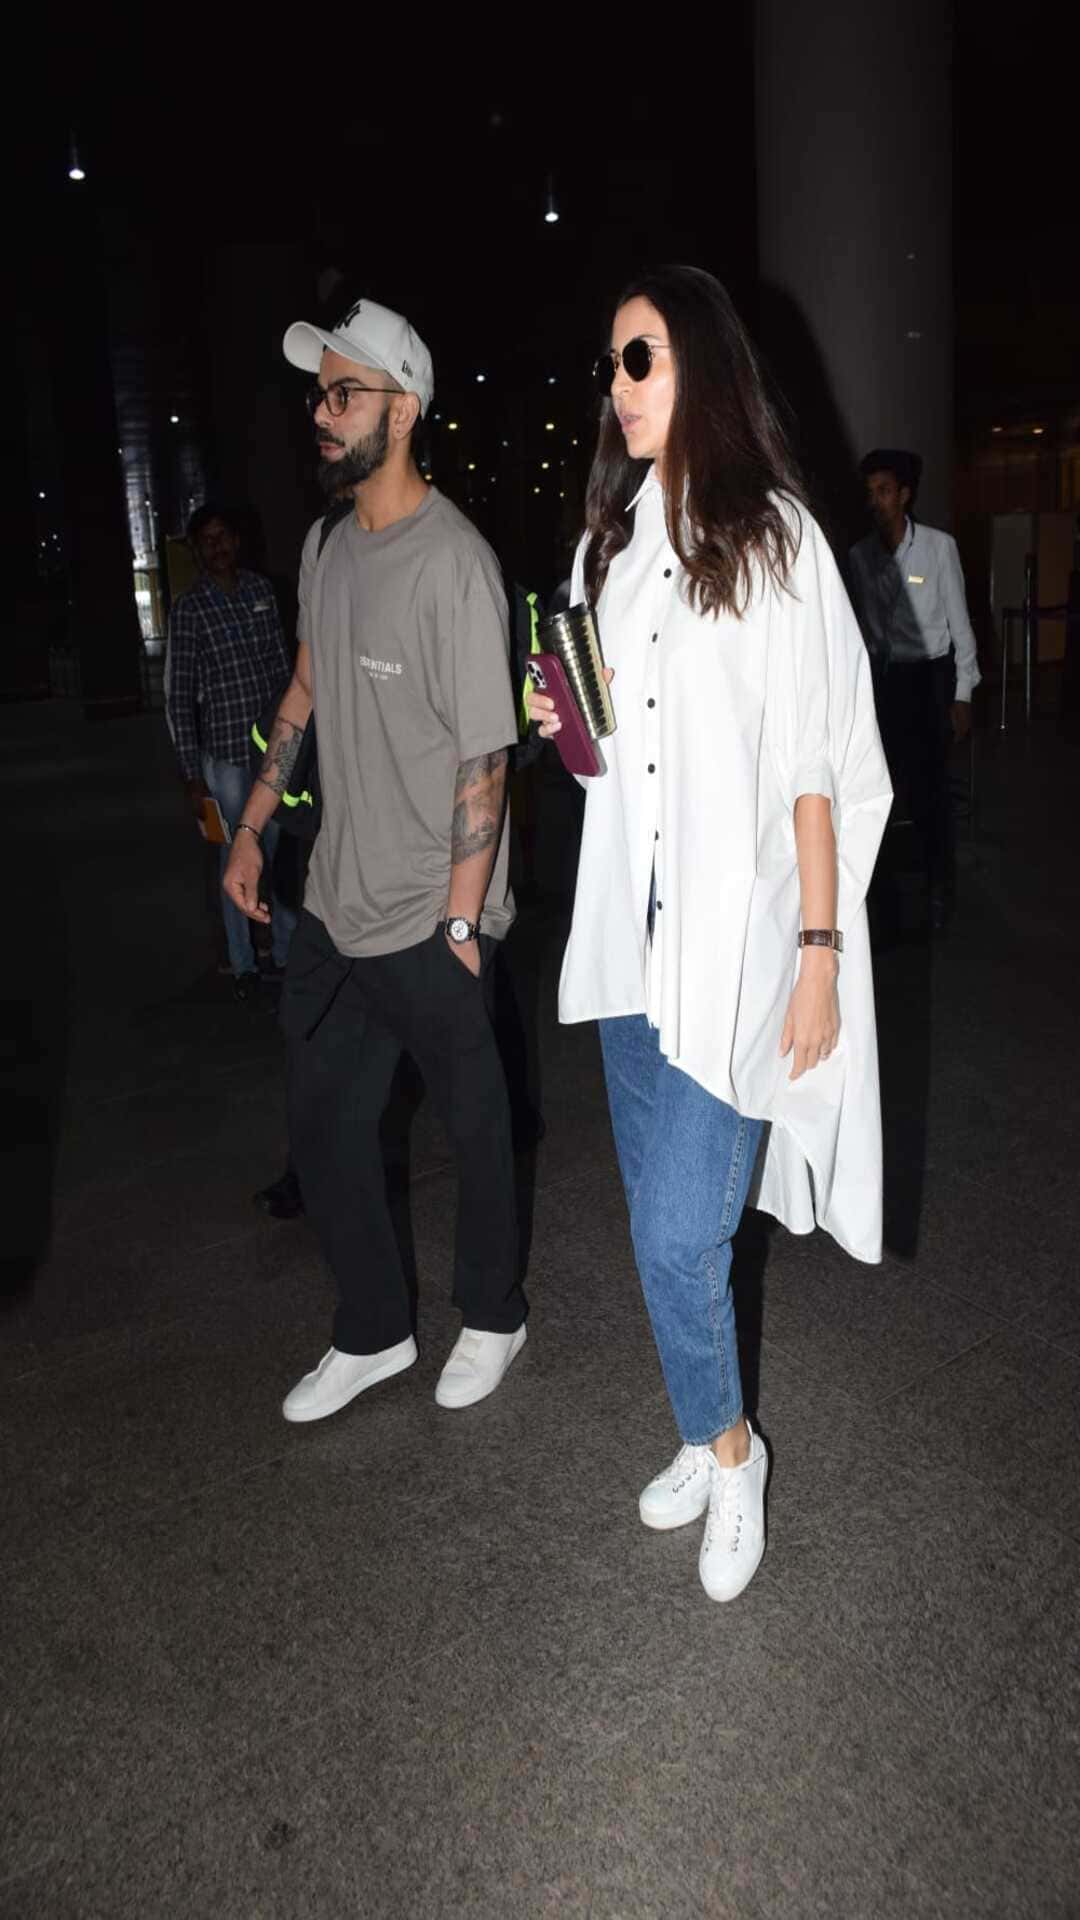 Mumbai: Anushka Sharma spotted at airport